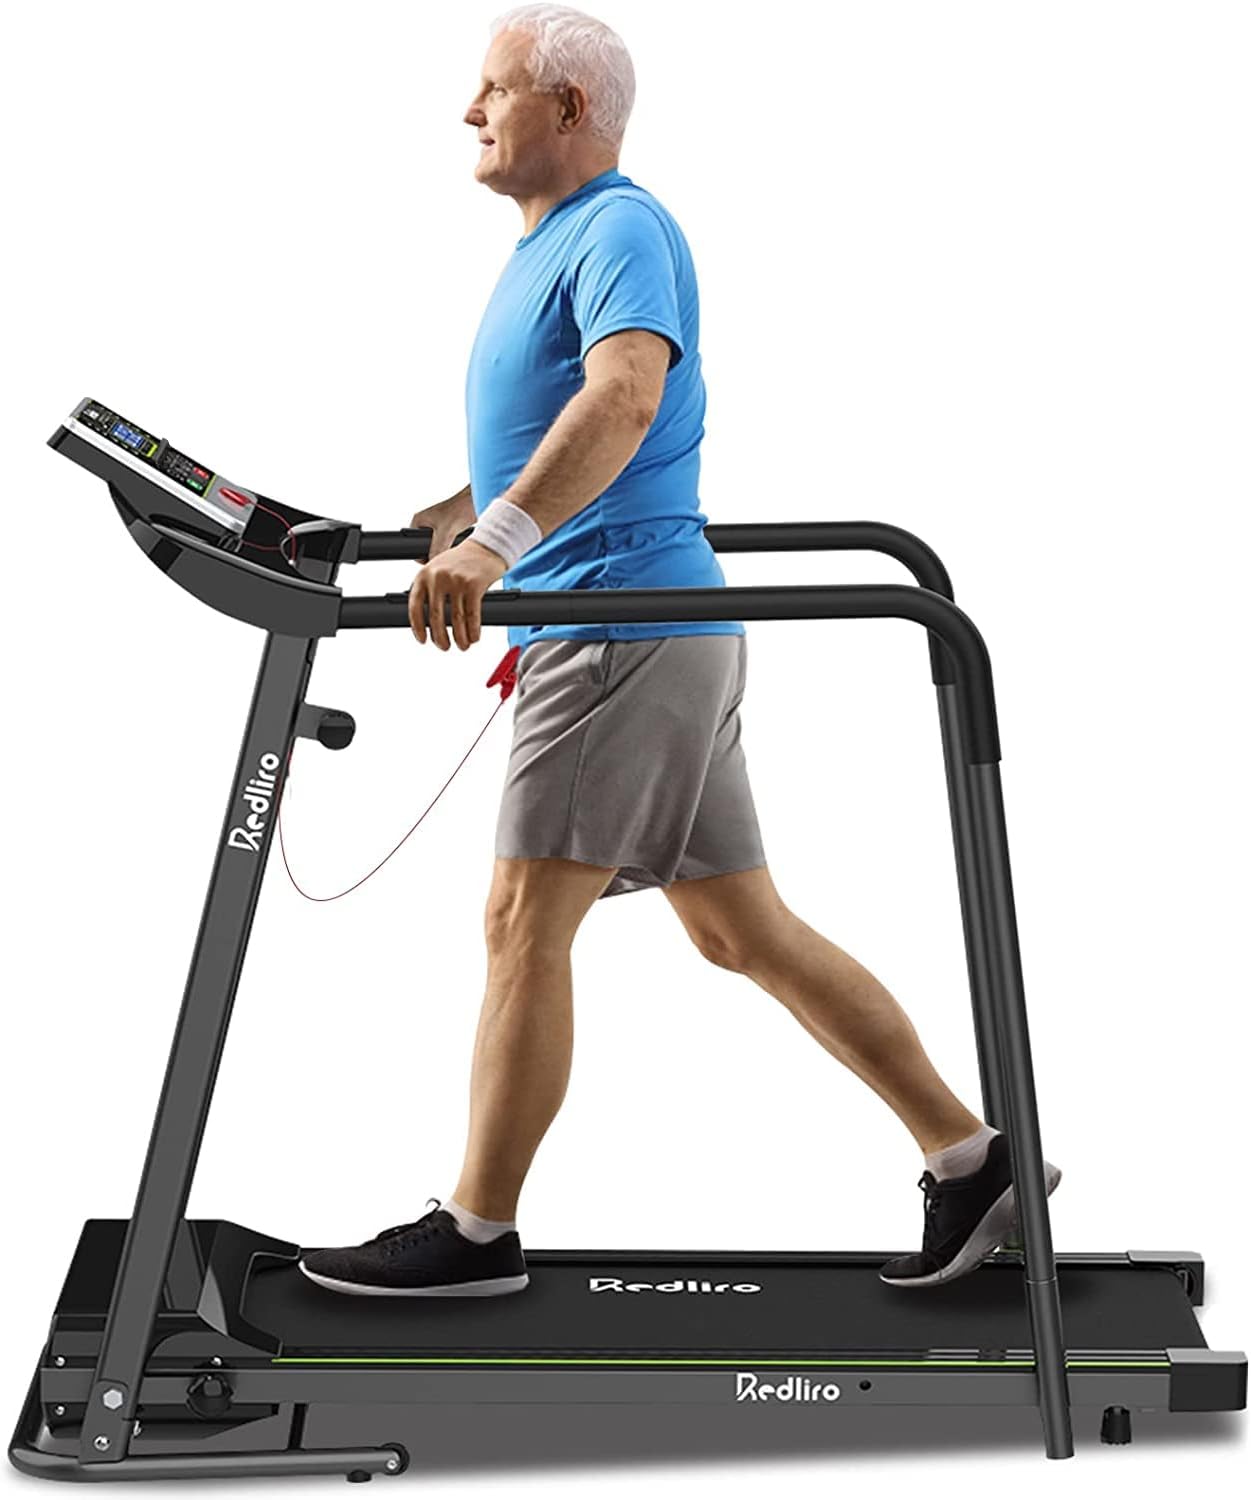 Redliro Walking Treadmill JK1608L